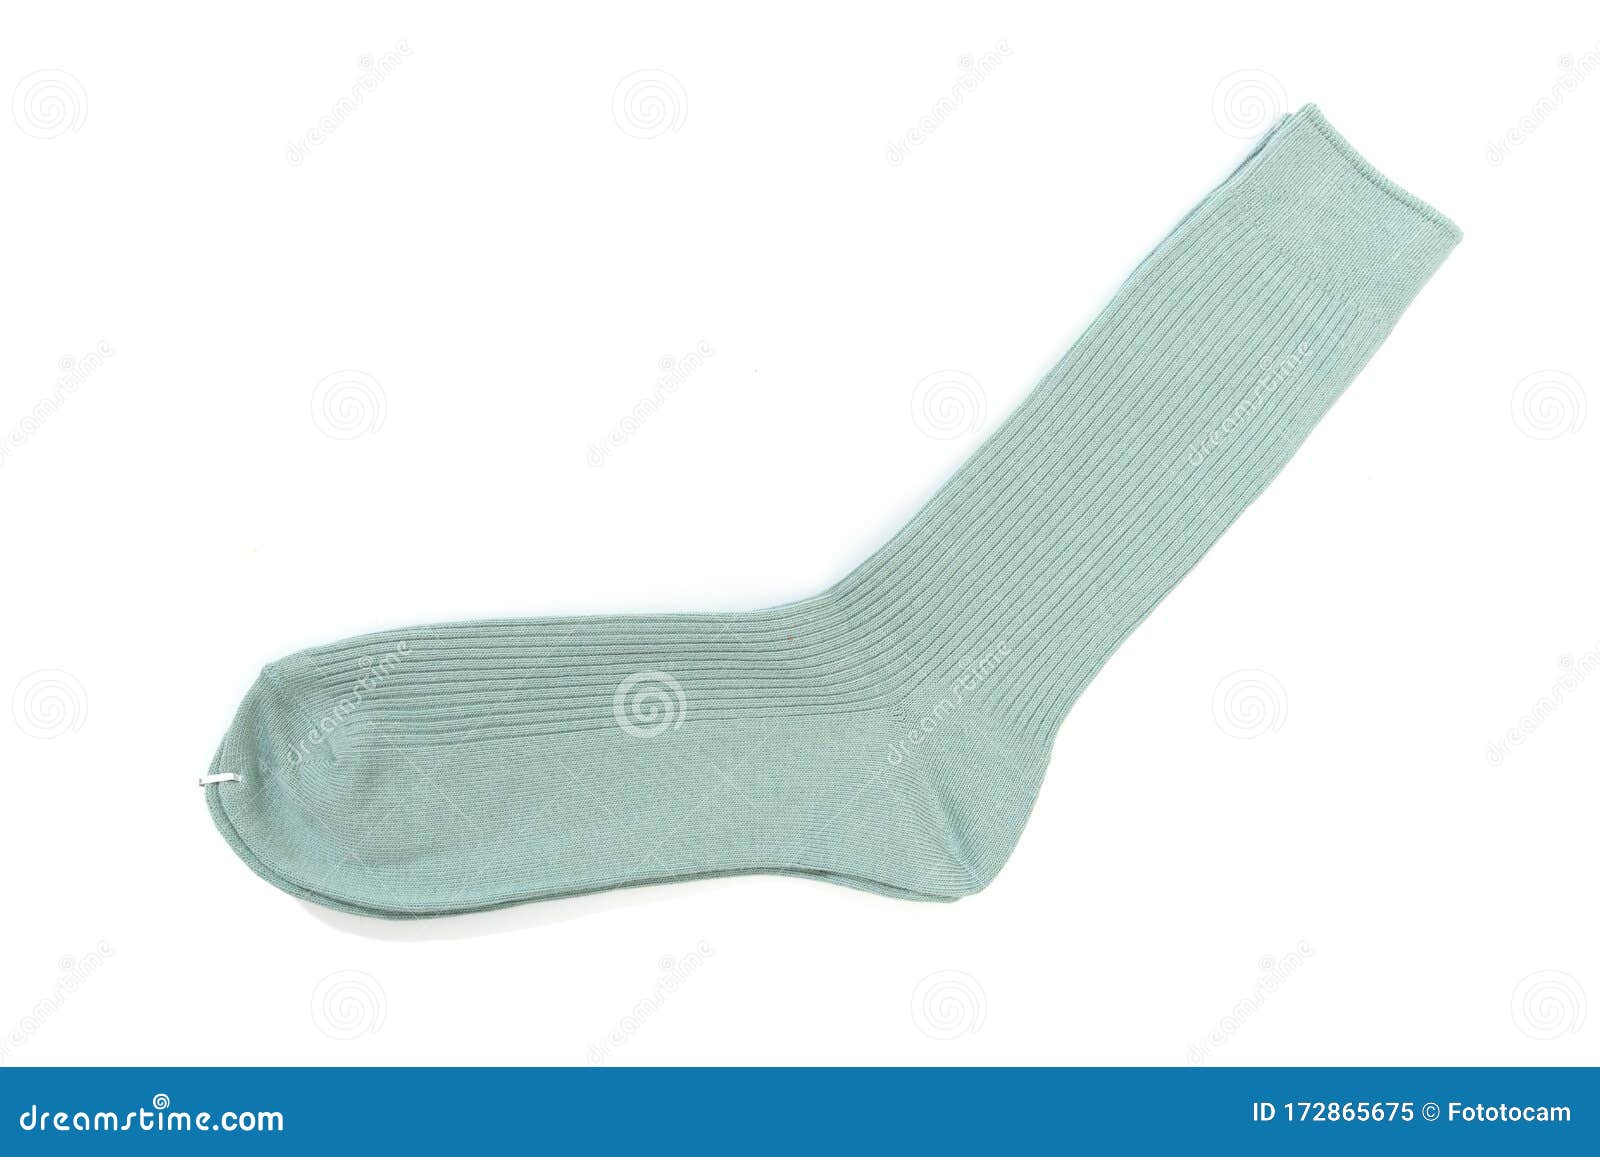 Blue Socks on Isolated White Background - Image Stock Image - Image of ...